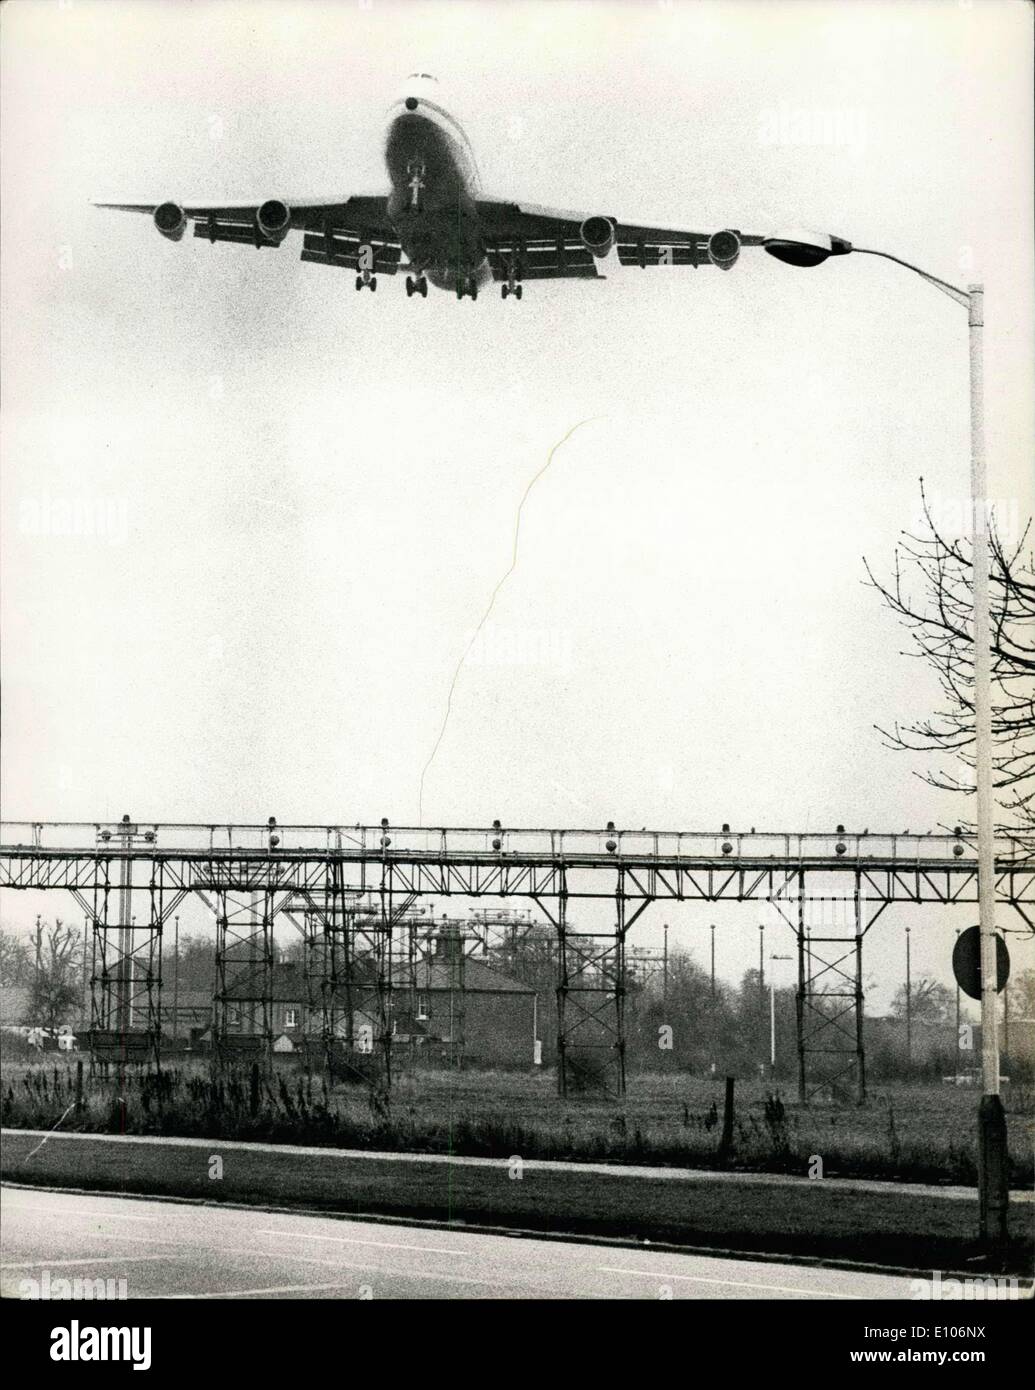 22 gennaio 1970 - Jumbo Jet arriva in volo inaugurale: vista mostrante la Pan American Boeing 747 jumbo jet - incrocio Staines Road come si entra in terra all'aeroporto di Heathrow di oggi - per inaugurare il primo al mondo jumbo jet service da New York a Londra. L'angolazione della telecamera lo fa apparire come se la punta delle ali è di toccare la lampada standard. Foto Stock